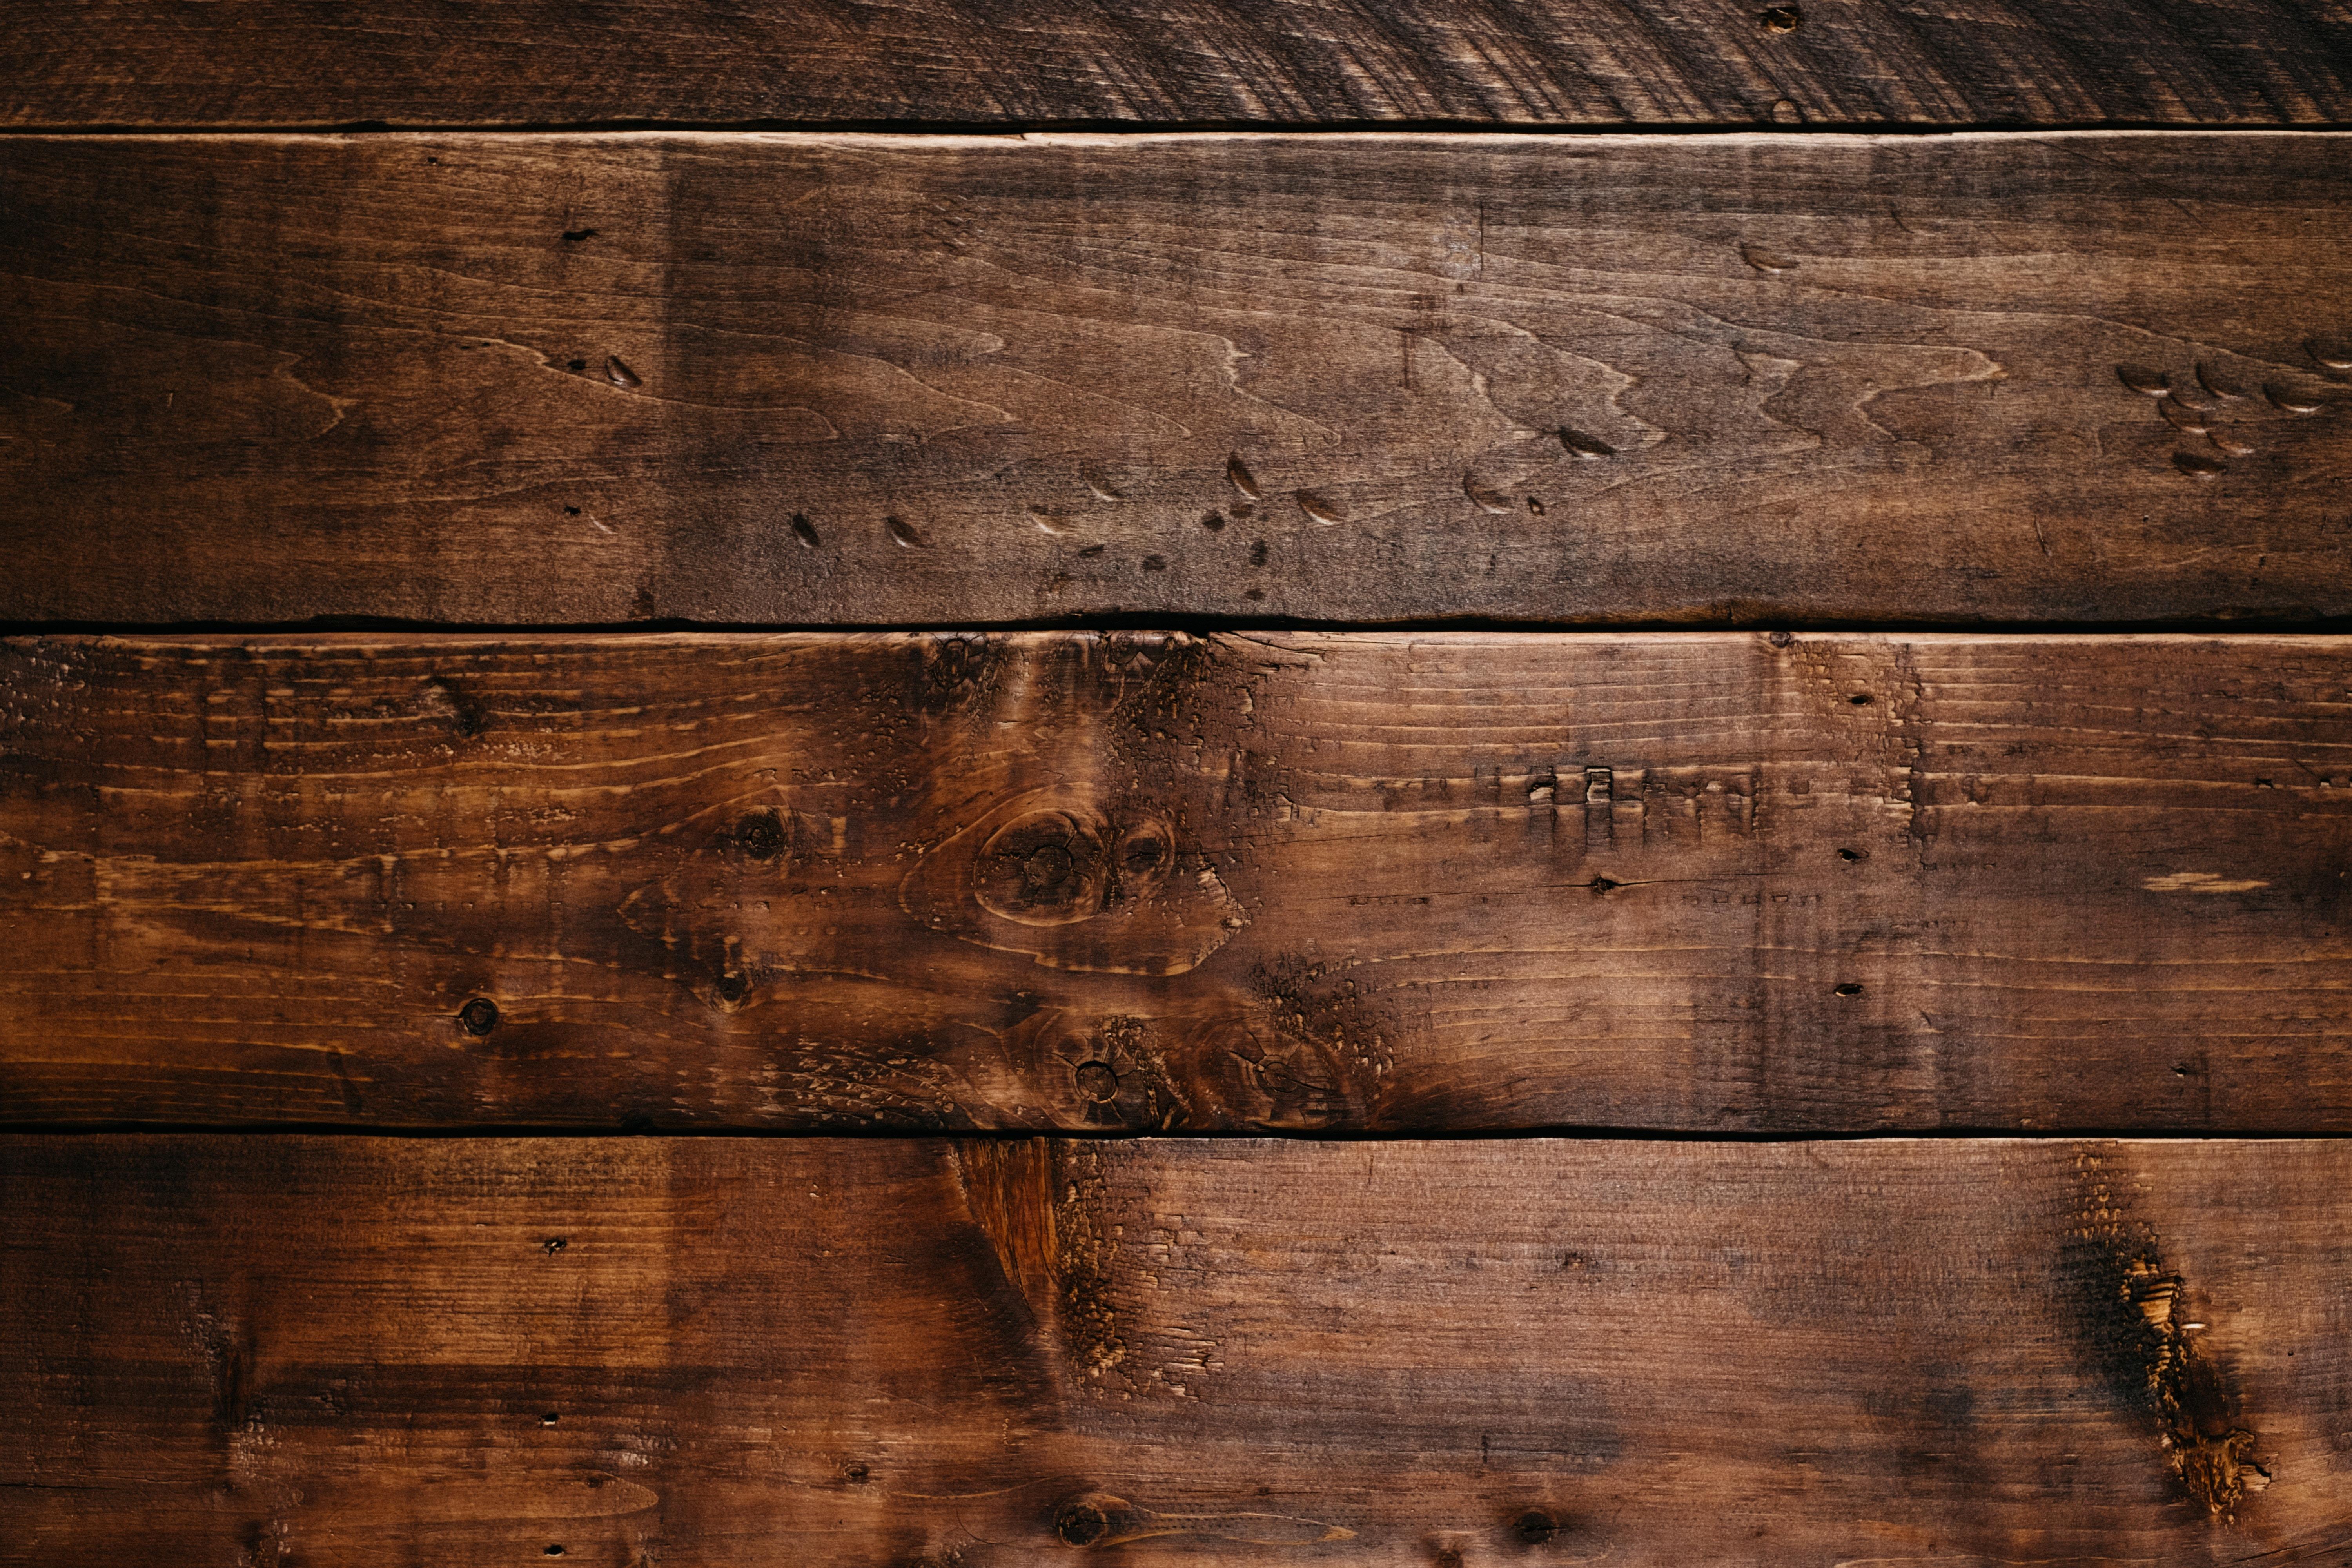 Hình nền gỗ đẹp với các mẫu hoa văn, các tông màu ấm áp sẽ mang đến cho không gian máy tính của bạn một vẻ đẹp độc đáo. Từ các mẫu gỗ sồi đến gỗ thông, hãy tải xuống ngay bộ sưu tập hình nền gỗ đa dạng này và biến chiếc máy tính của mình thành một tác phẩm nghệ thuật.